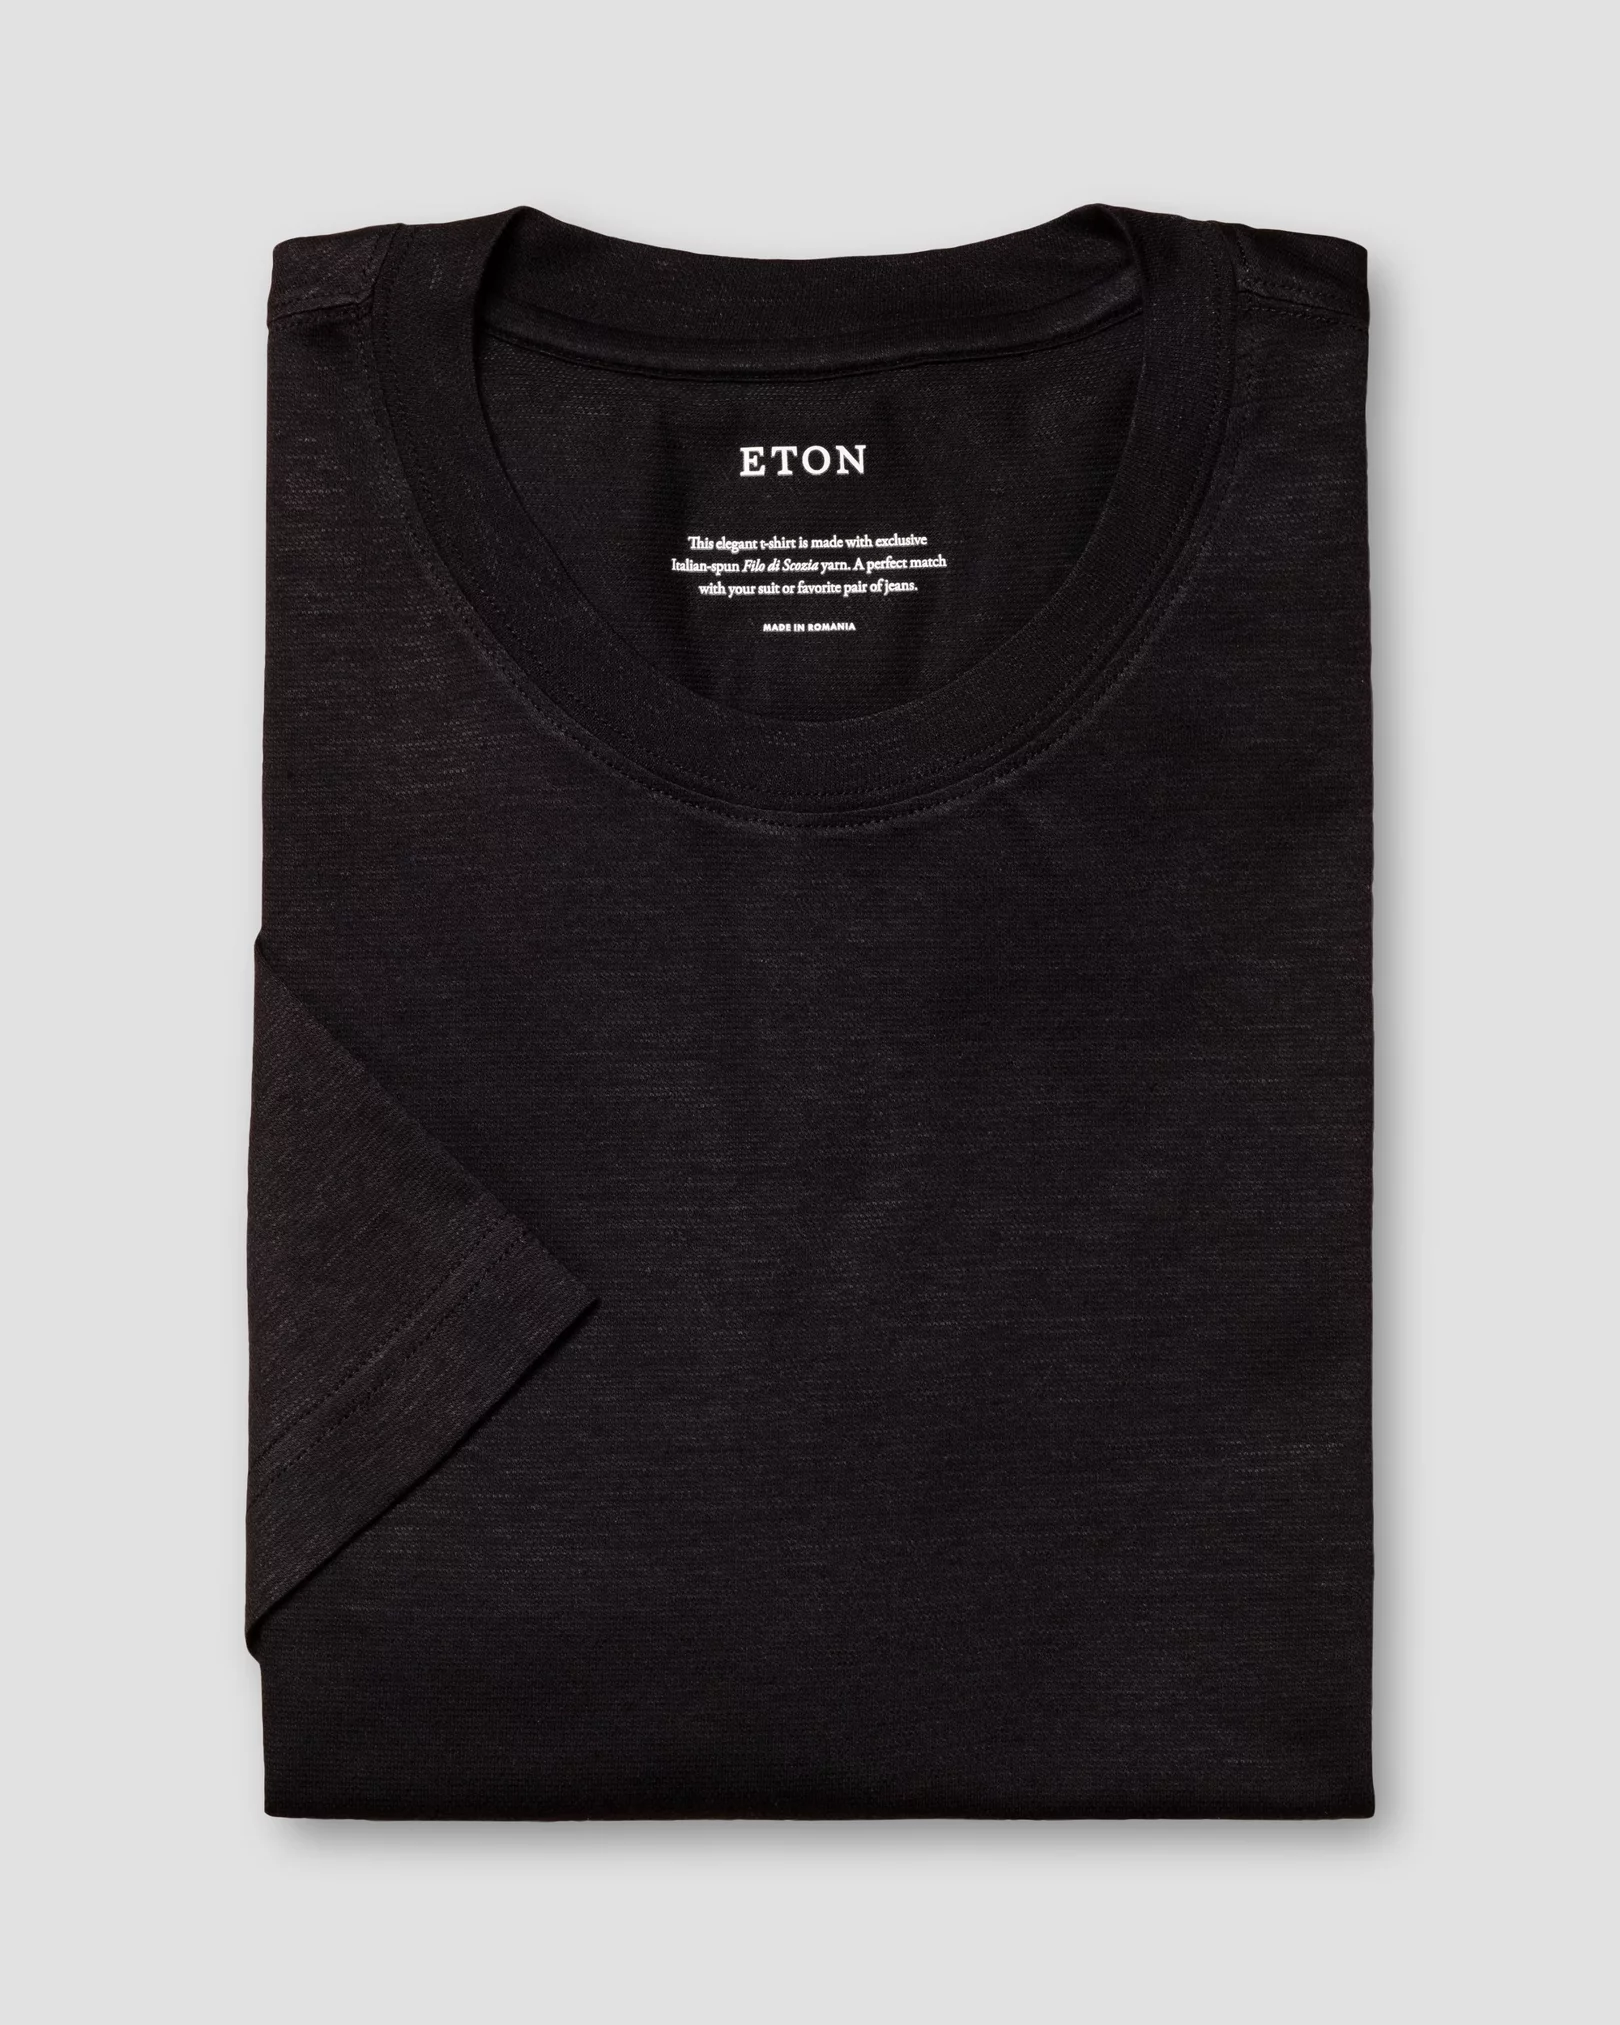 Eton - black pique t shirt short sleeve boxfit t shirt